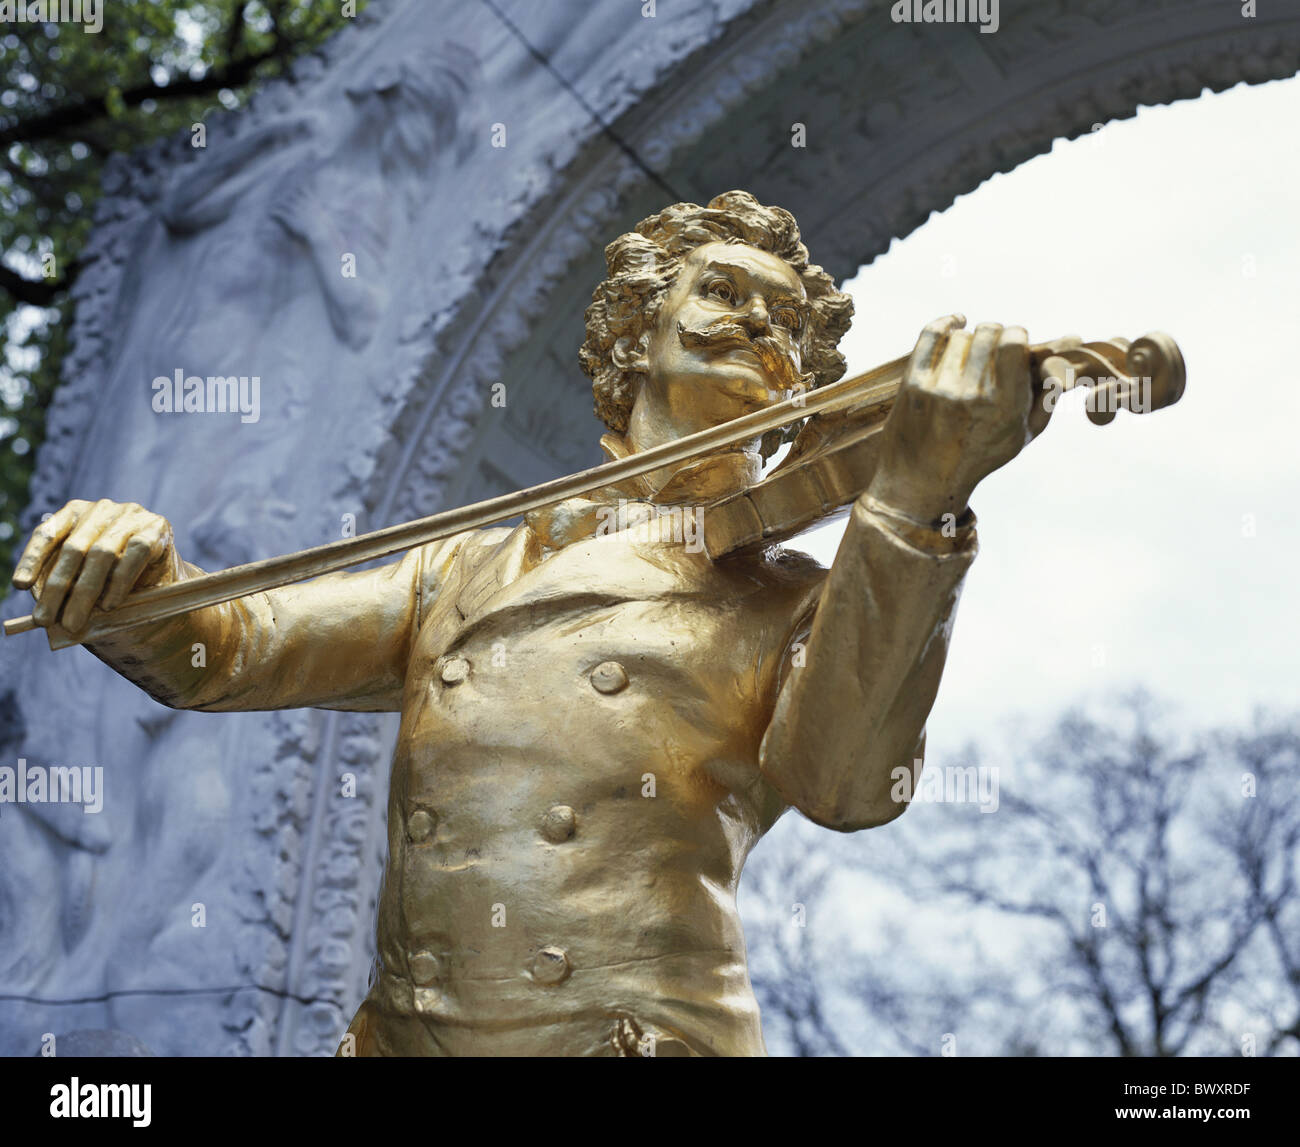 Golden Johann Strauss monumento di musica classica compositore Austria Europa scultura parco comunale di Vienna del punto di riferimento Foto Stock